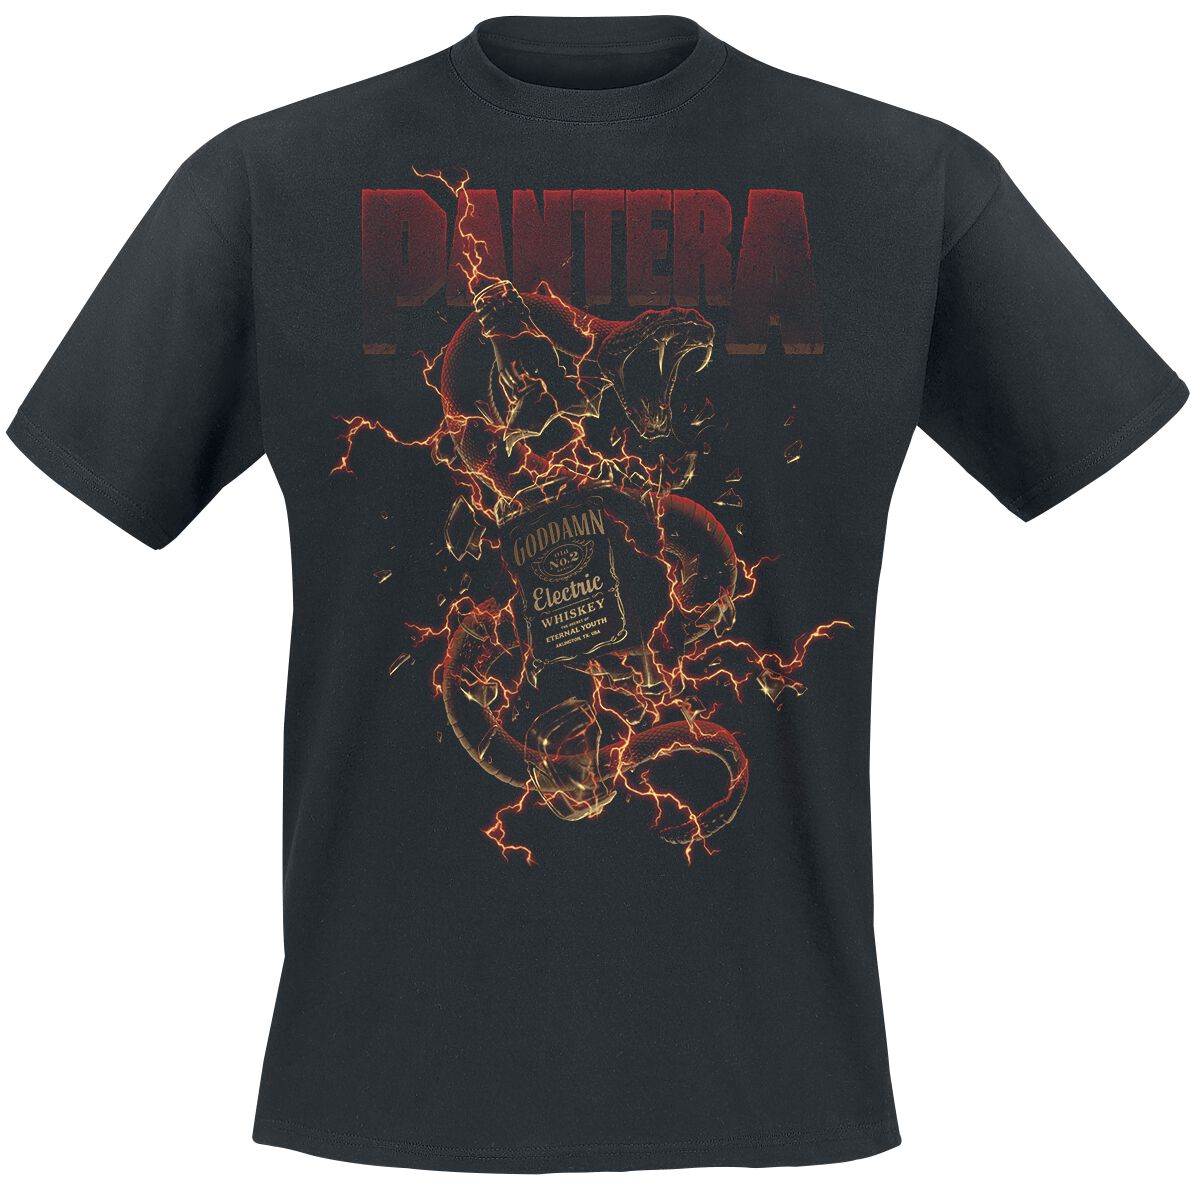 Pantera T-Shirt - Whiskey Snake - M bis 3XL - für Männer - Größe L - schwarz  - Lizenziertes Merchandise!